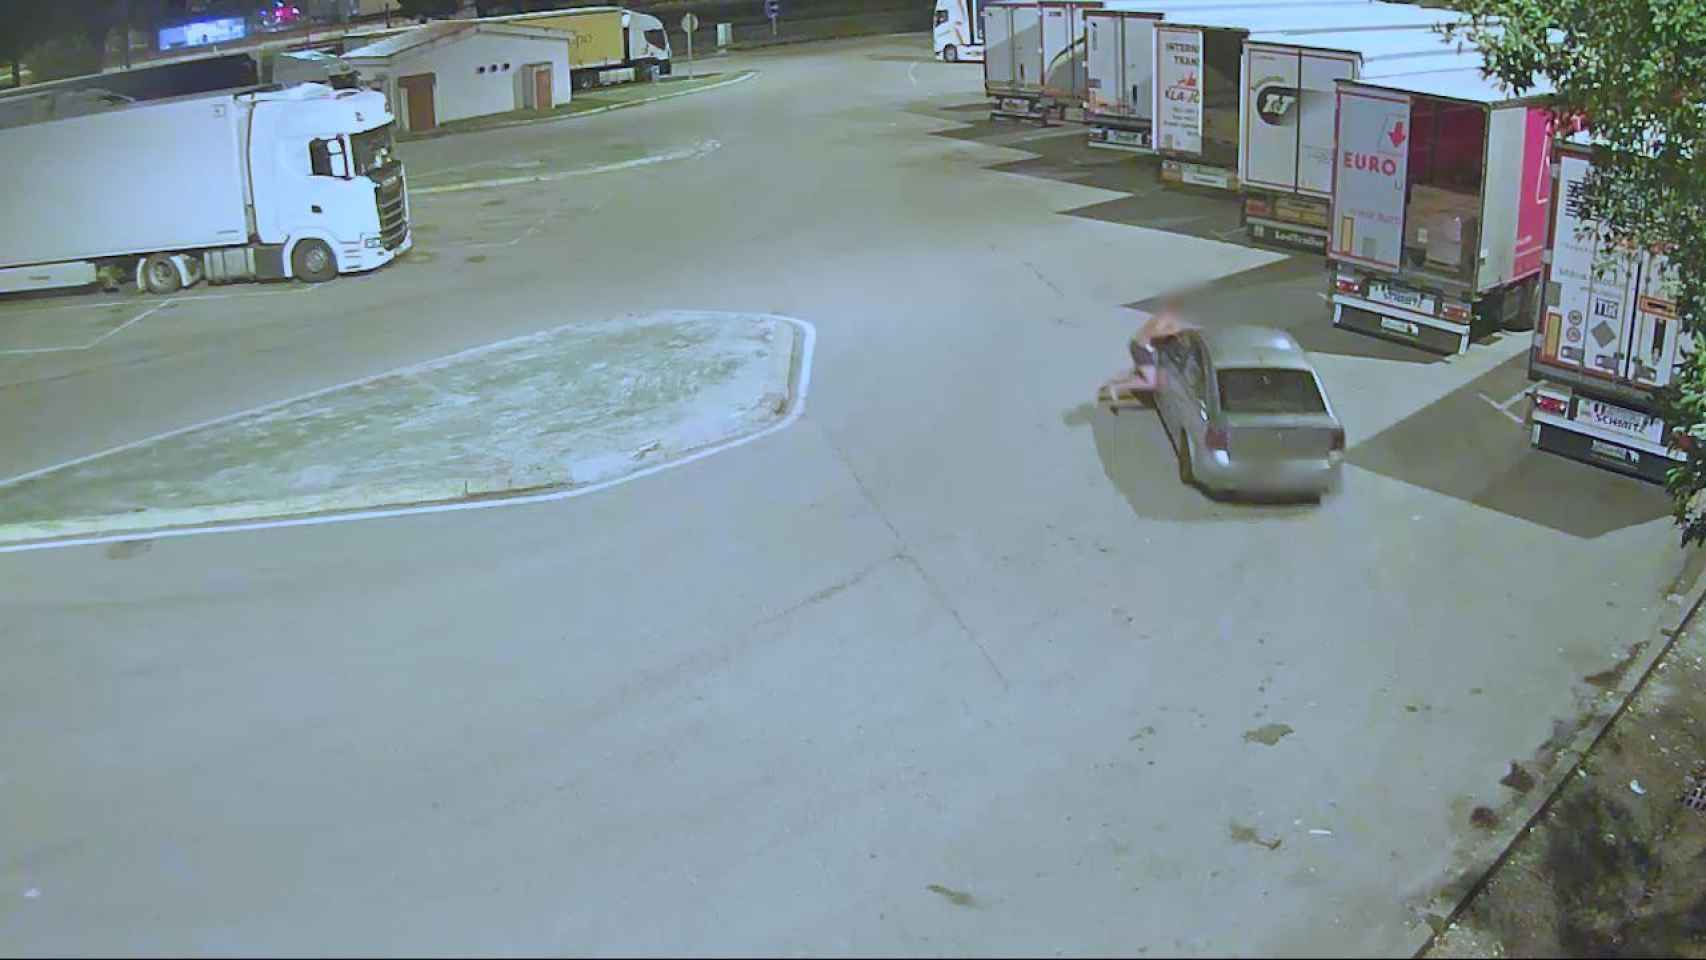 Momento en el que los ladrones atropellan al dueño de una autocaravana / MOSSOS D'ESQUADRA